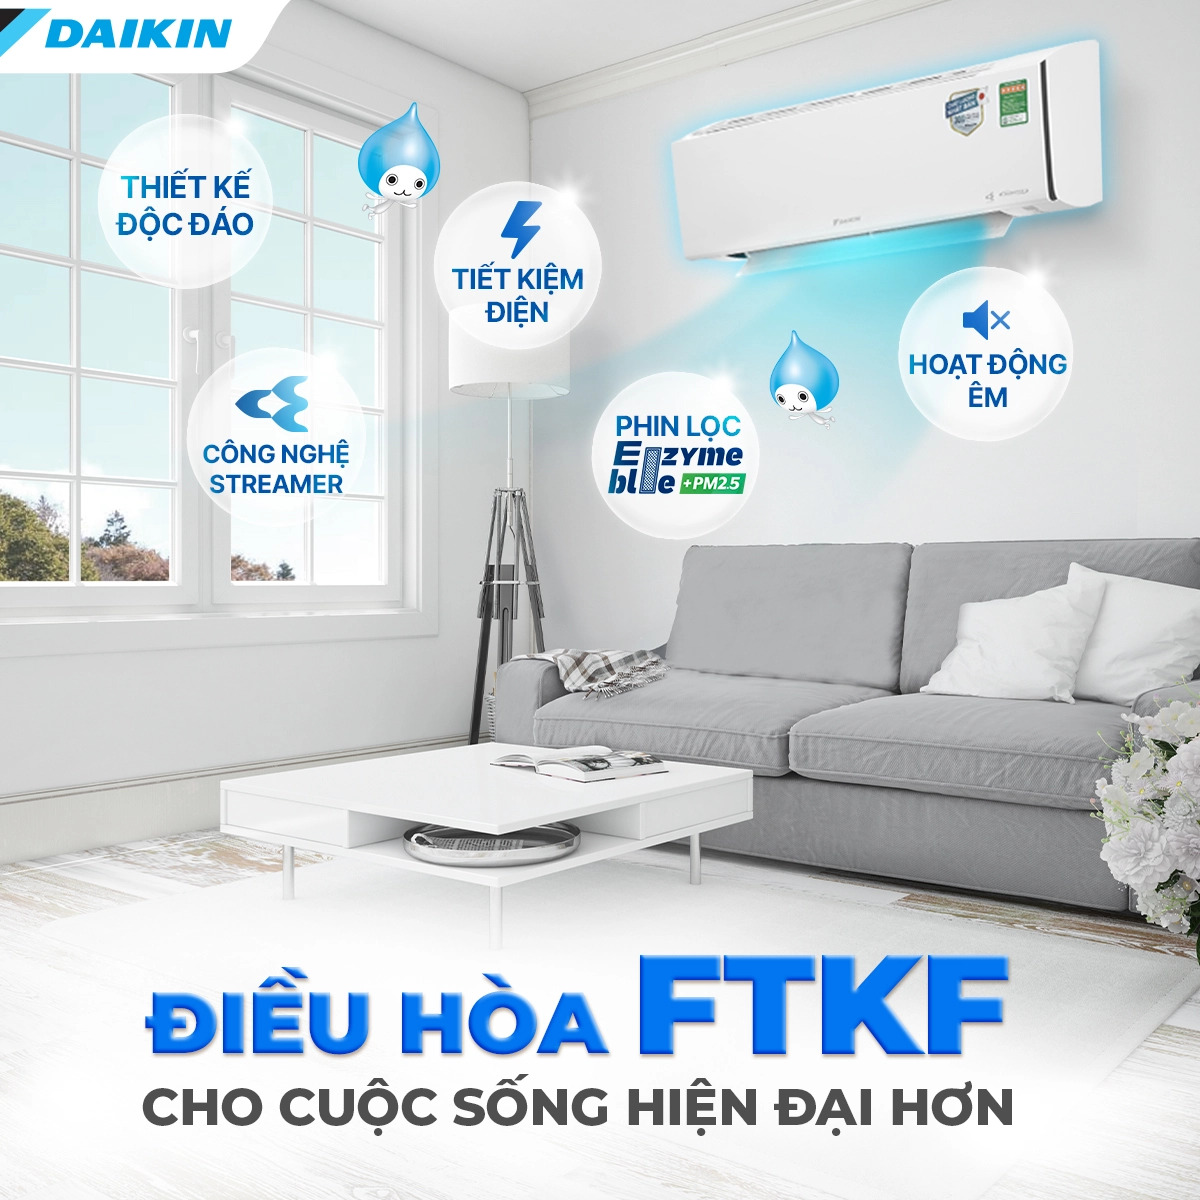 Cung cấp mẫu mới Máy lạnh treo tường DAIKIN Model FTKF giá rẻ và thi công chuyên nghiệp May-lanh-treo-tuong-DAIKIN-FTKF-13